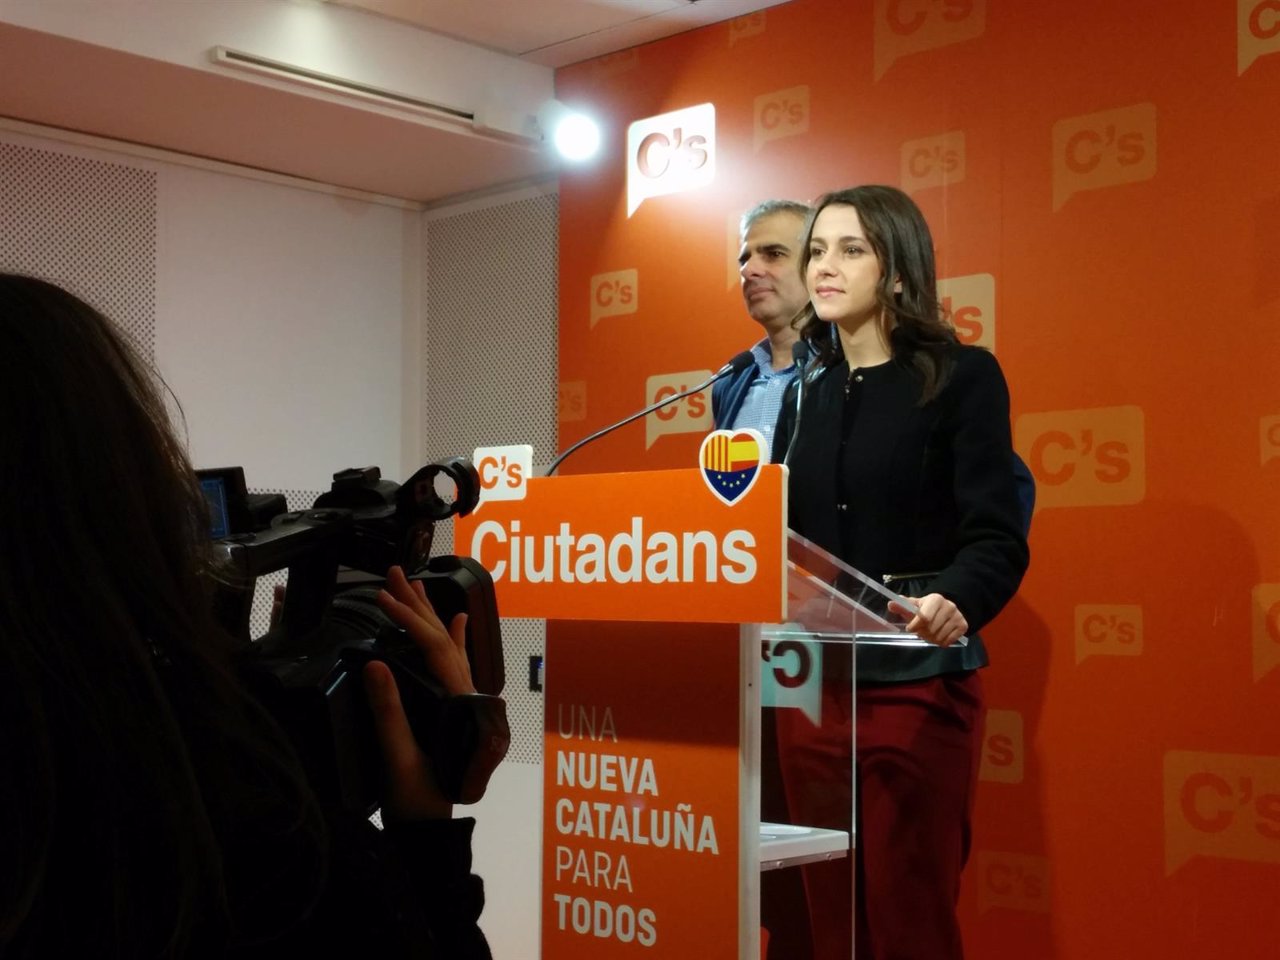 Rueda de prensa de Inés Arrimadas y Carlos Carrizosa (C's)